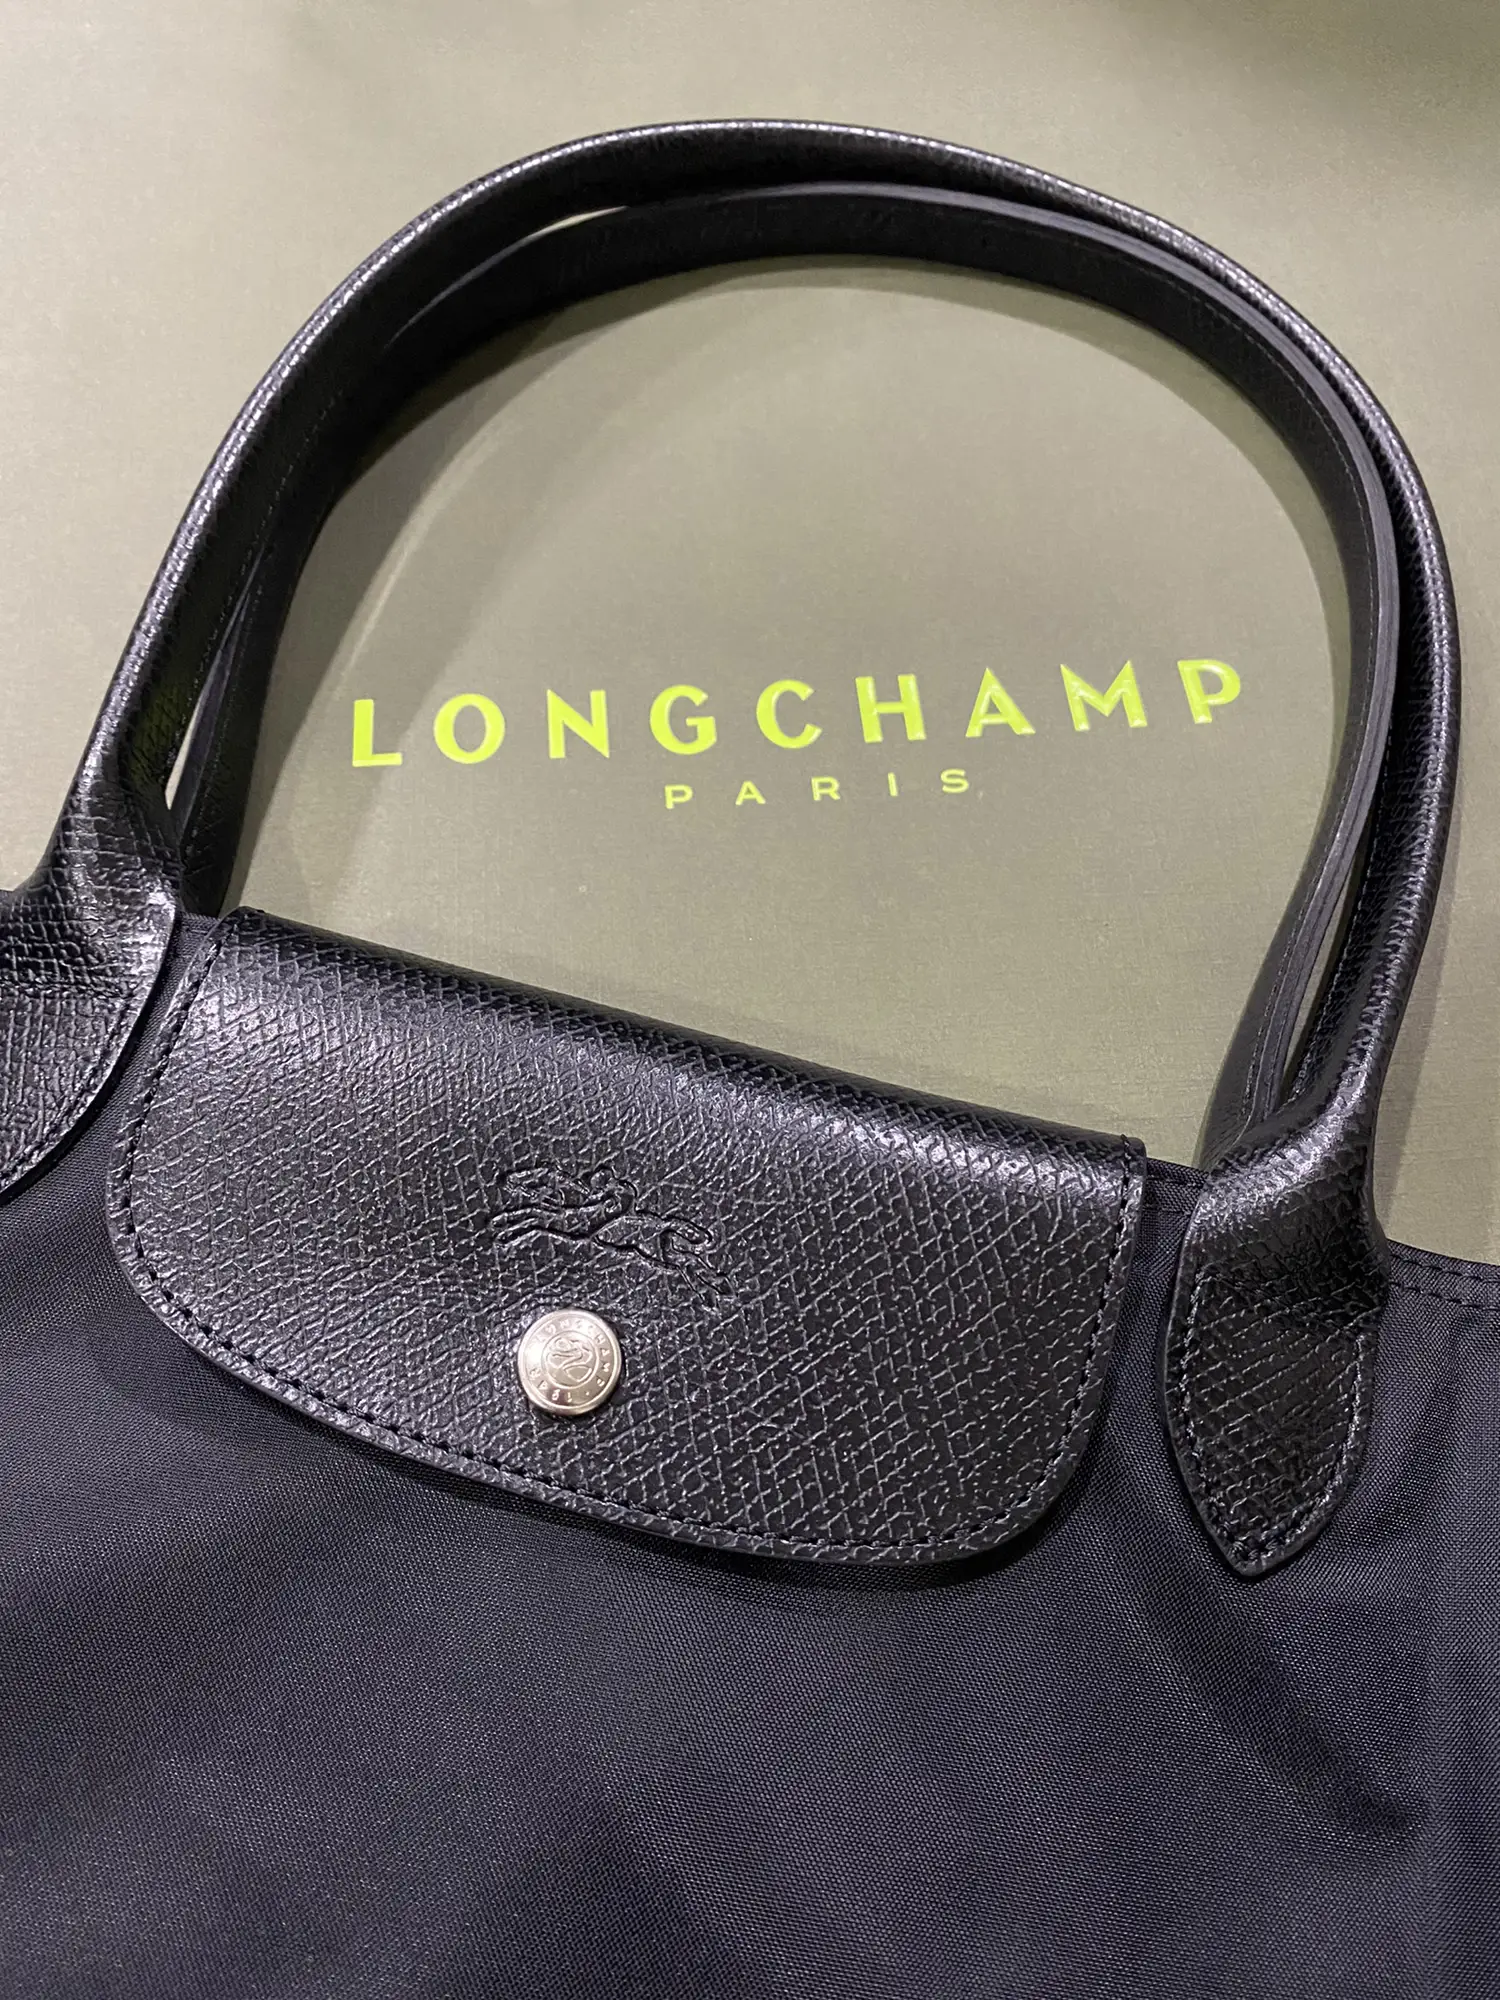 Unboxing Longchamp Le Pliage Energy Pouch in Black